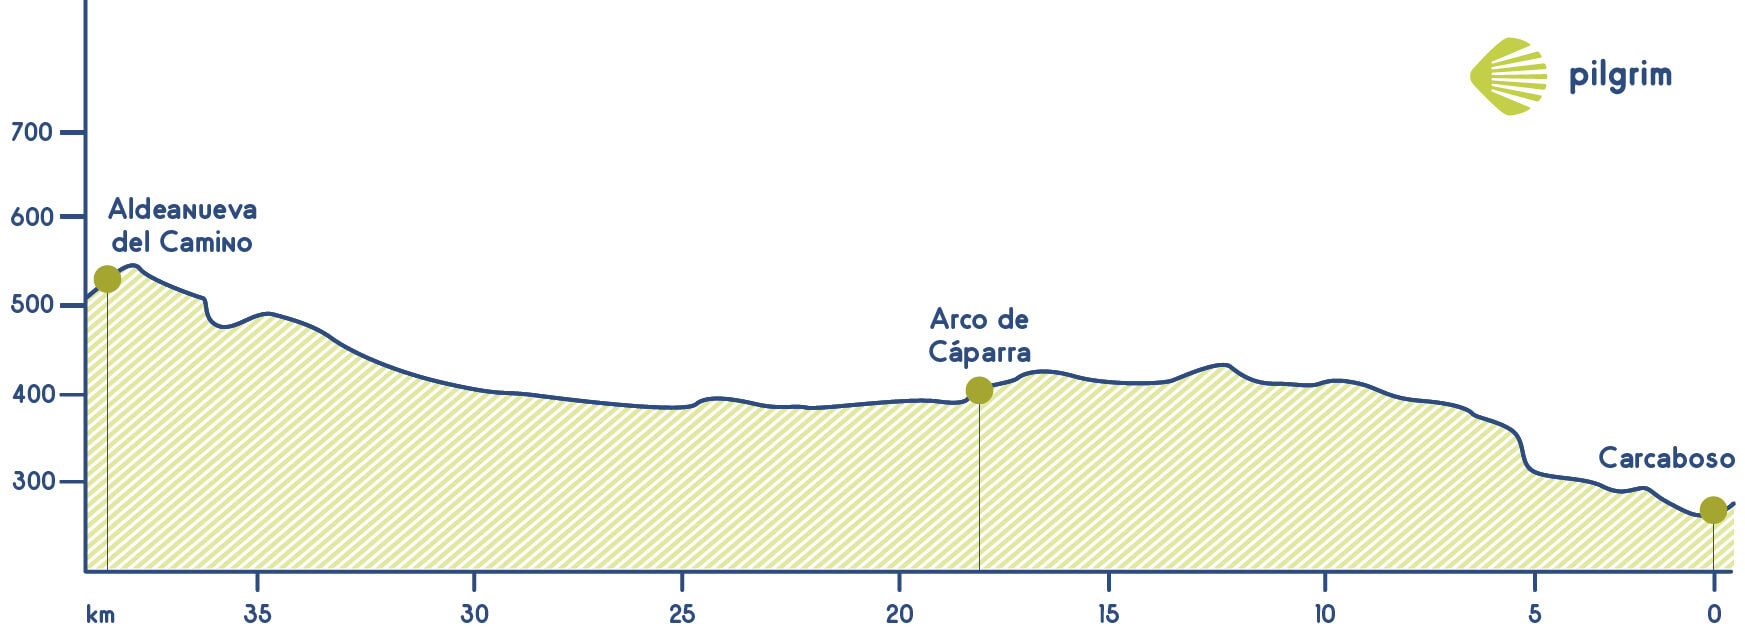 Stage 15 Vía de la Plata